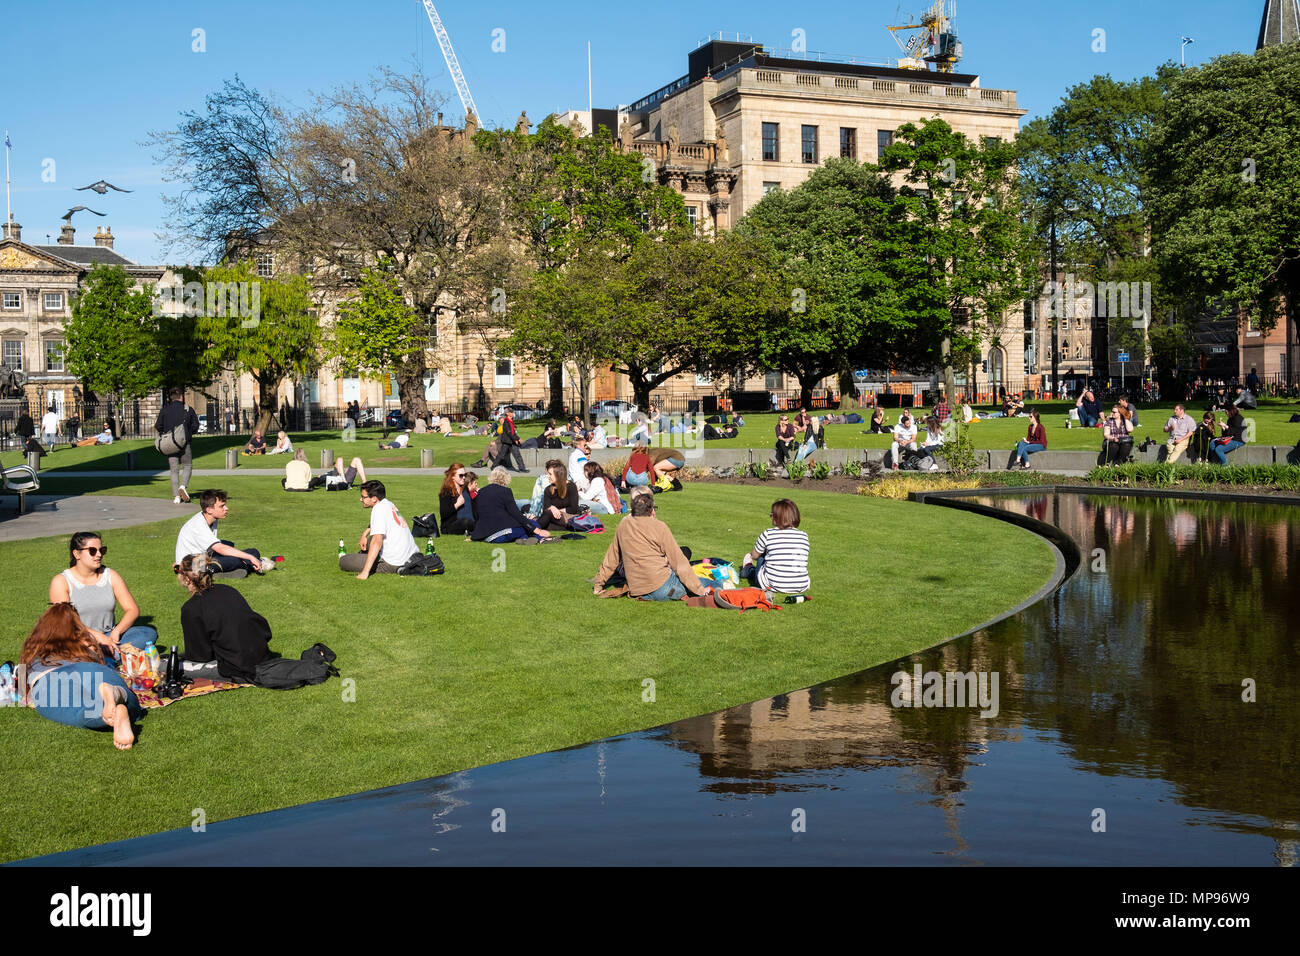 Leute sitzen auf Gras in St Andrews Square in warmen, sonnigen Wetter in Edinburgh, Schottland, Vereinigtes Königreich, Großbritannien Stockfoto